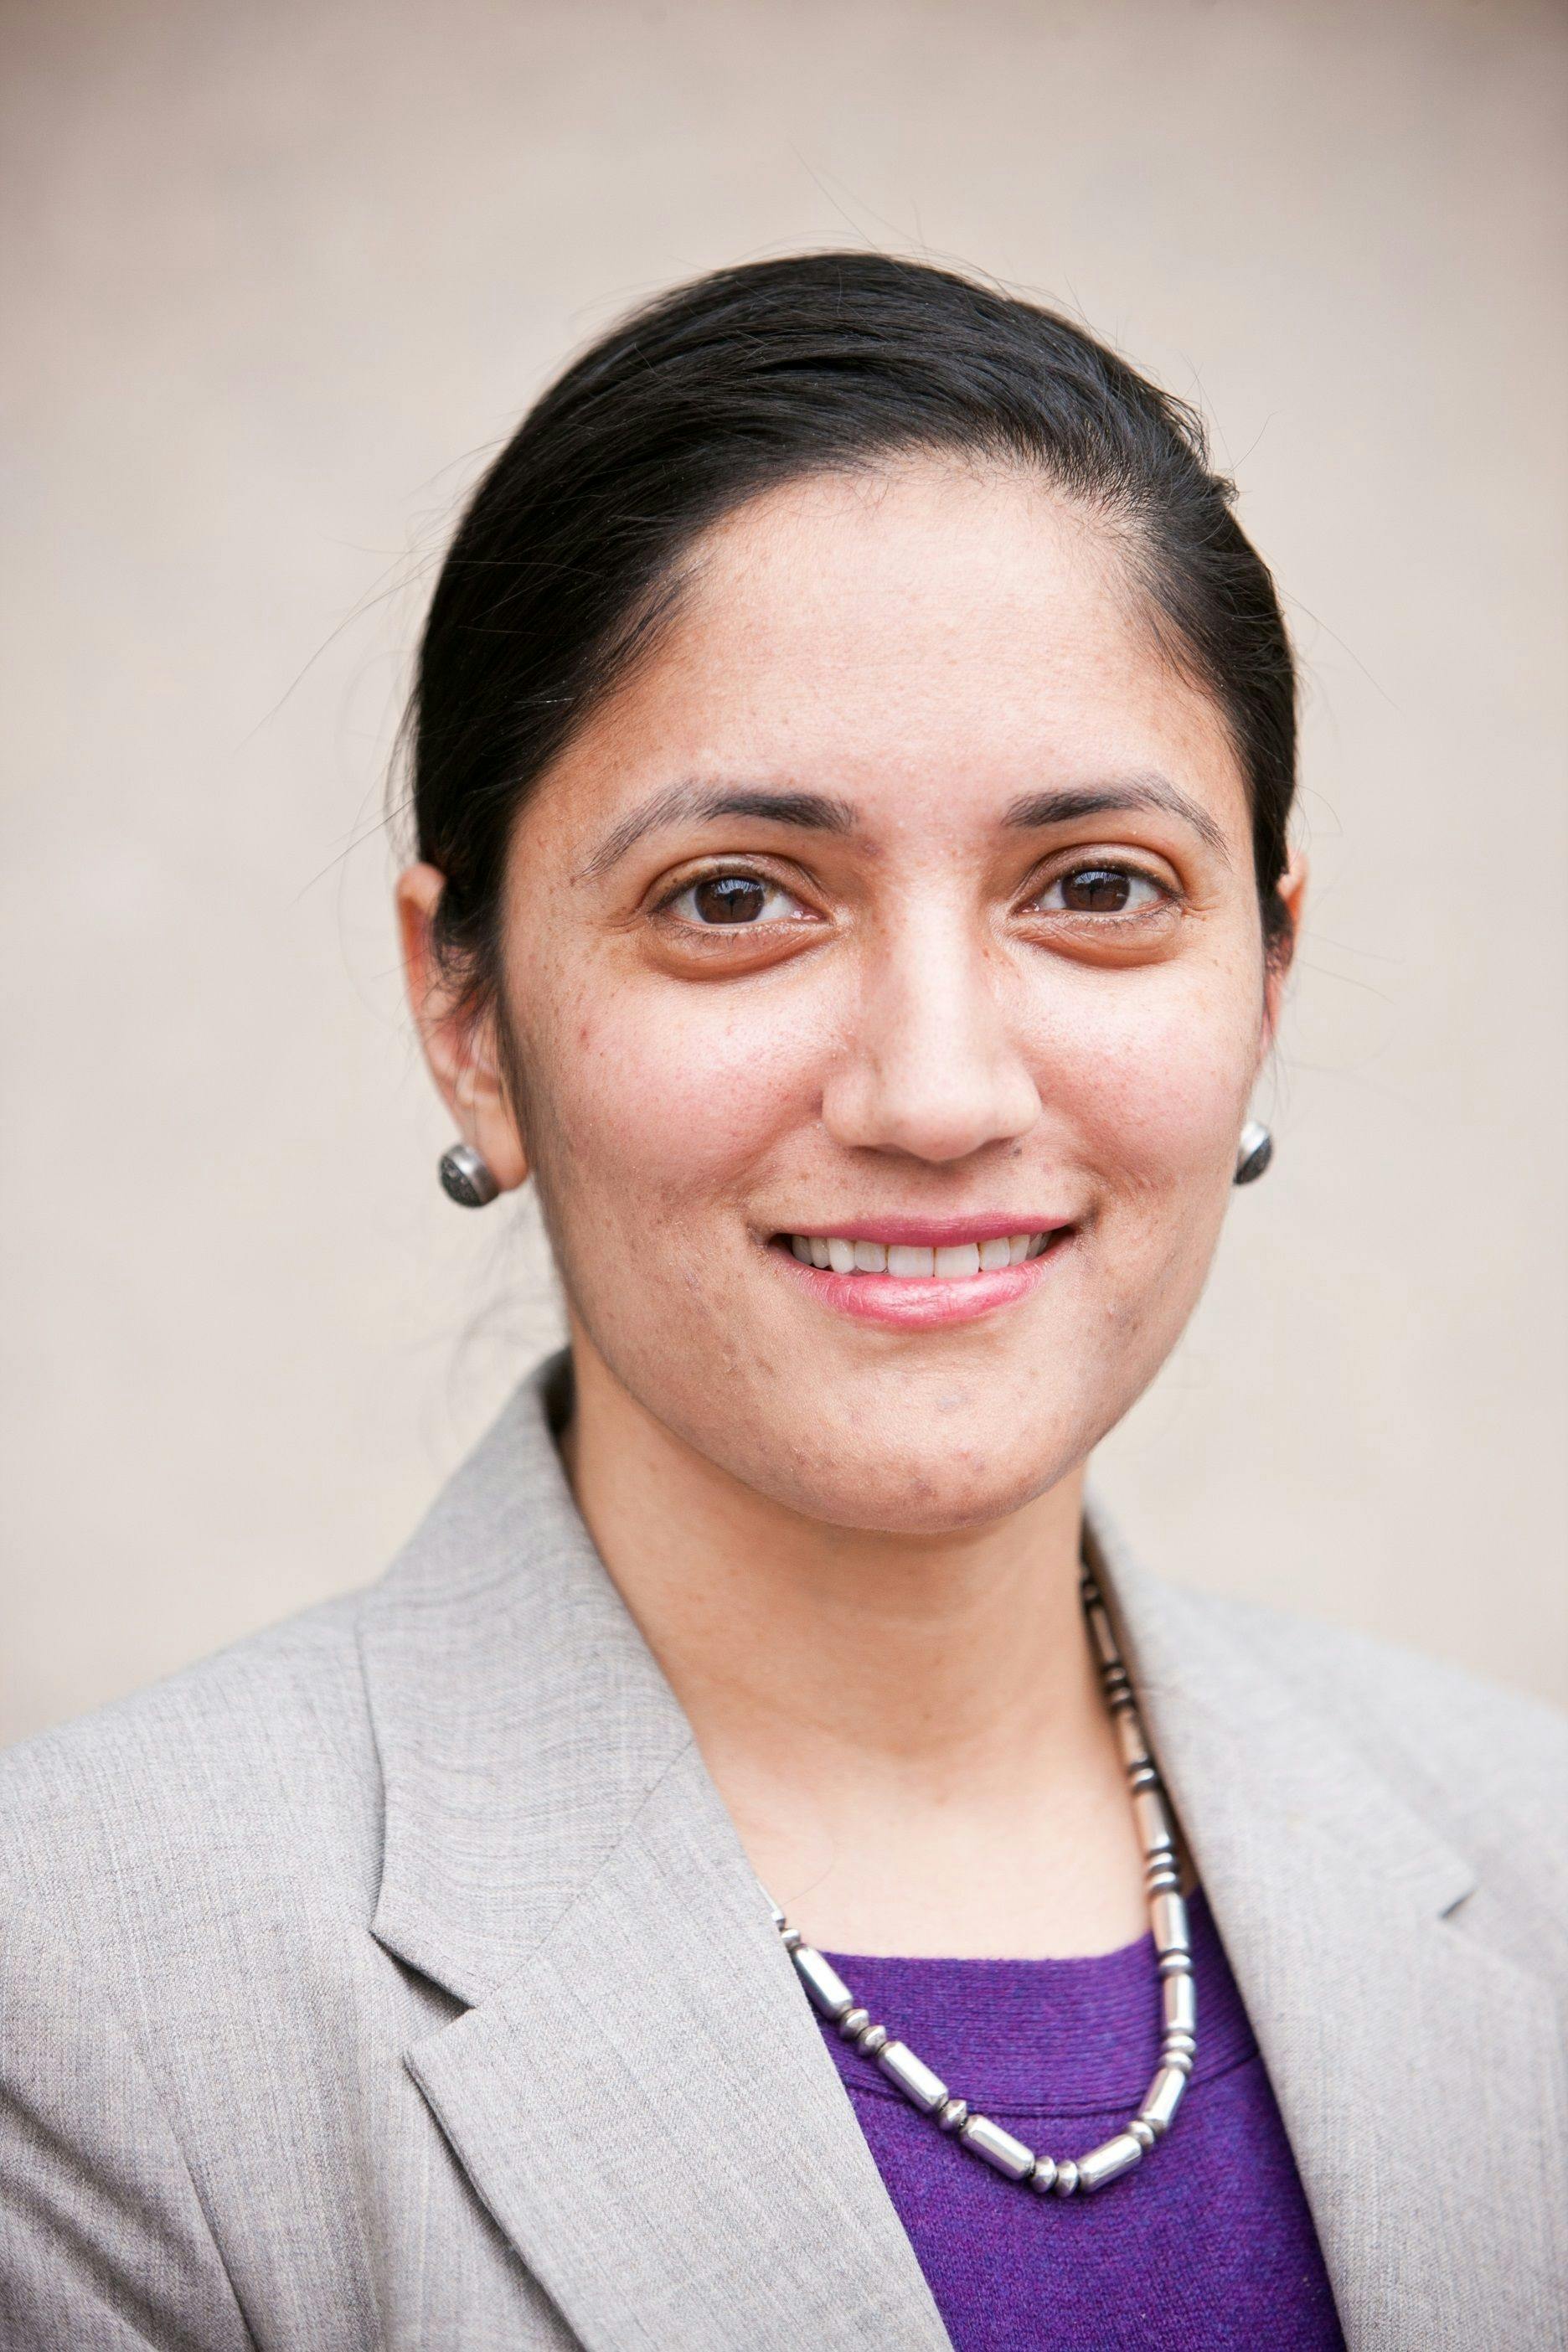 Kavita Patel